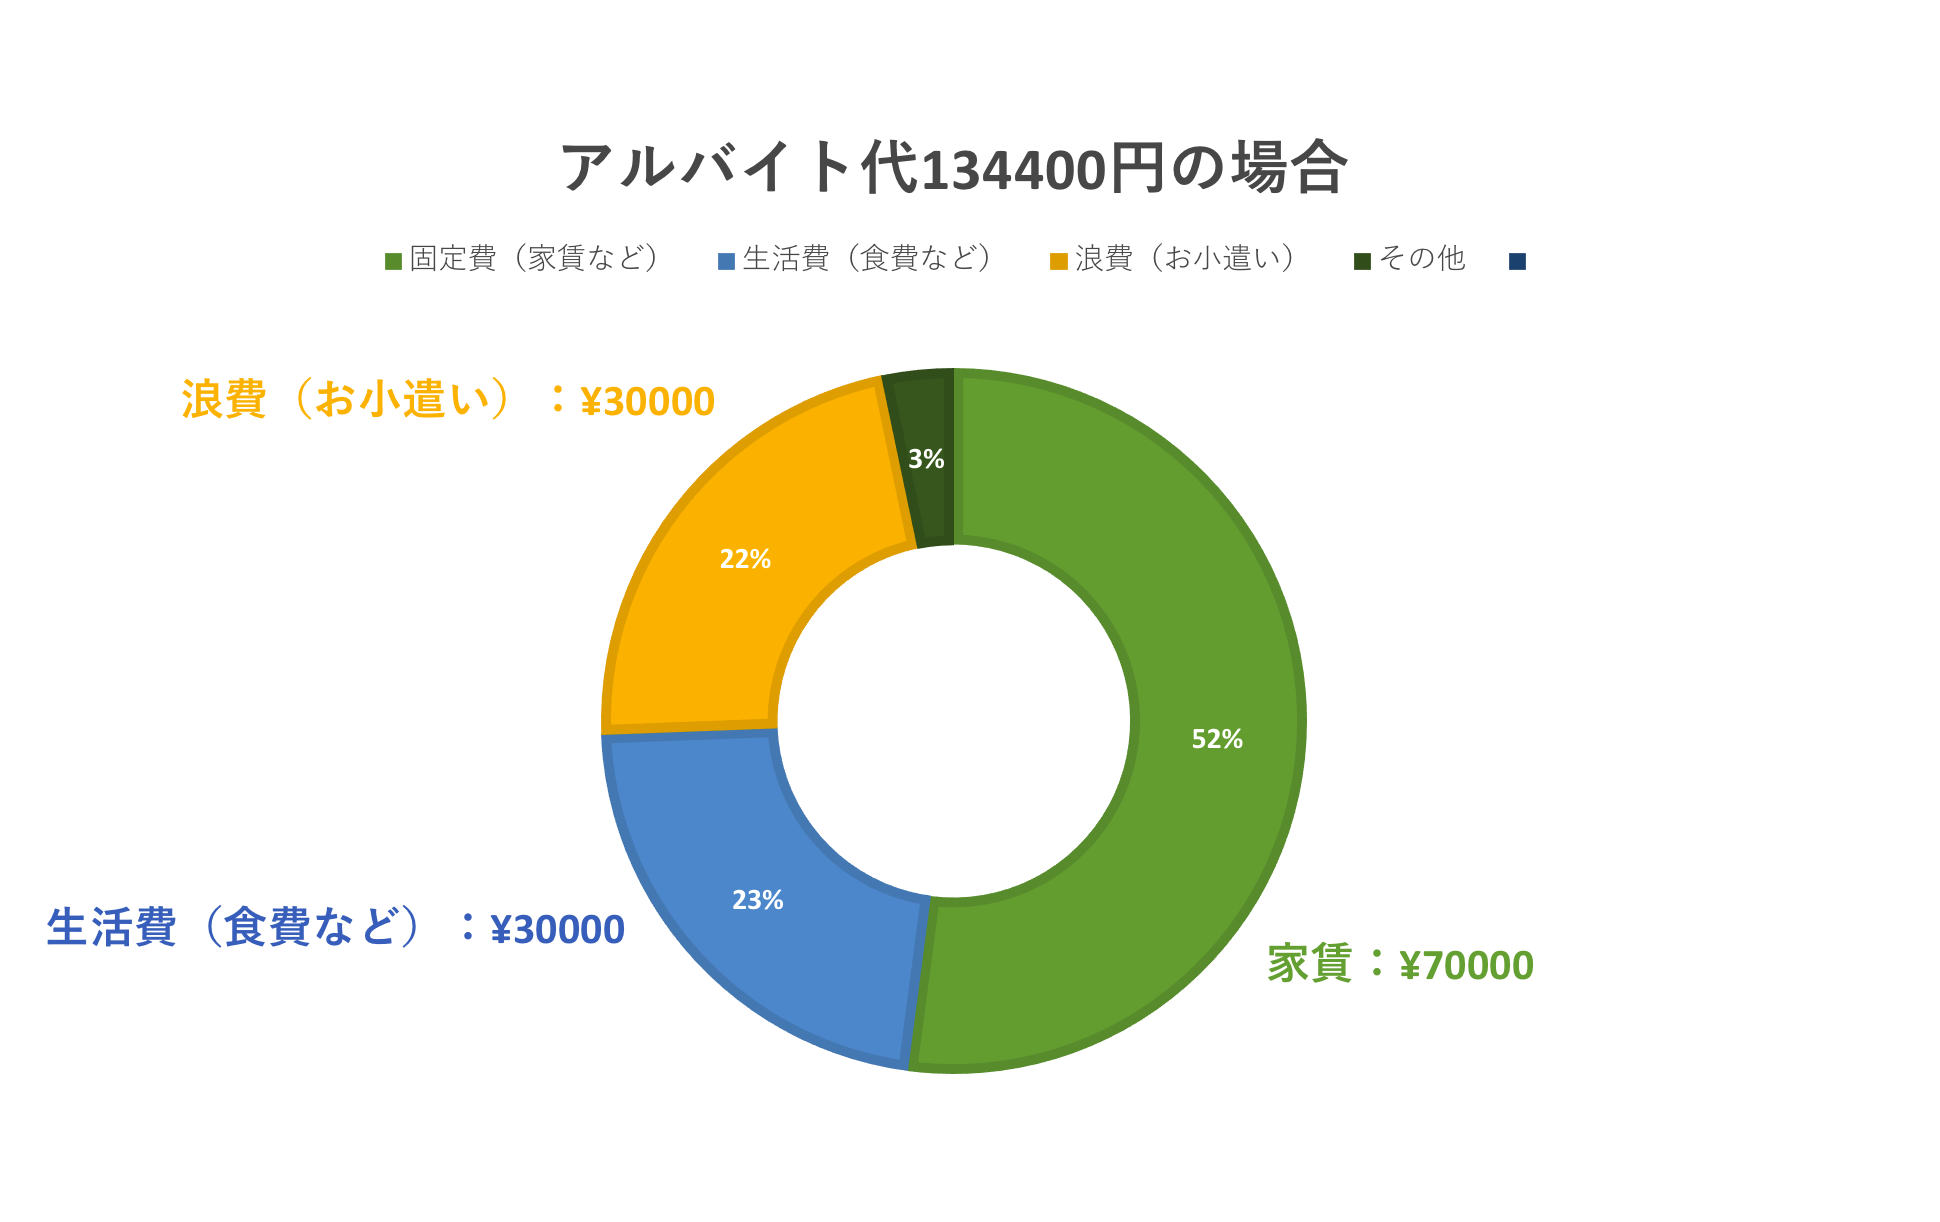 アルバイト代の使い道2 家賃：¥70000、生活費：¥30000、浪費：¥30000